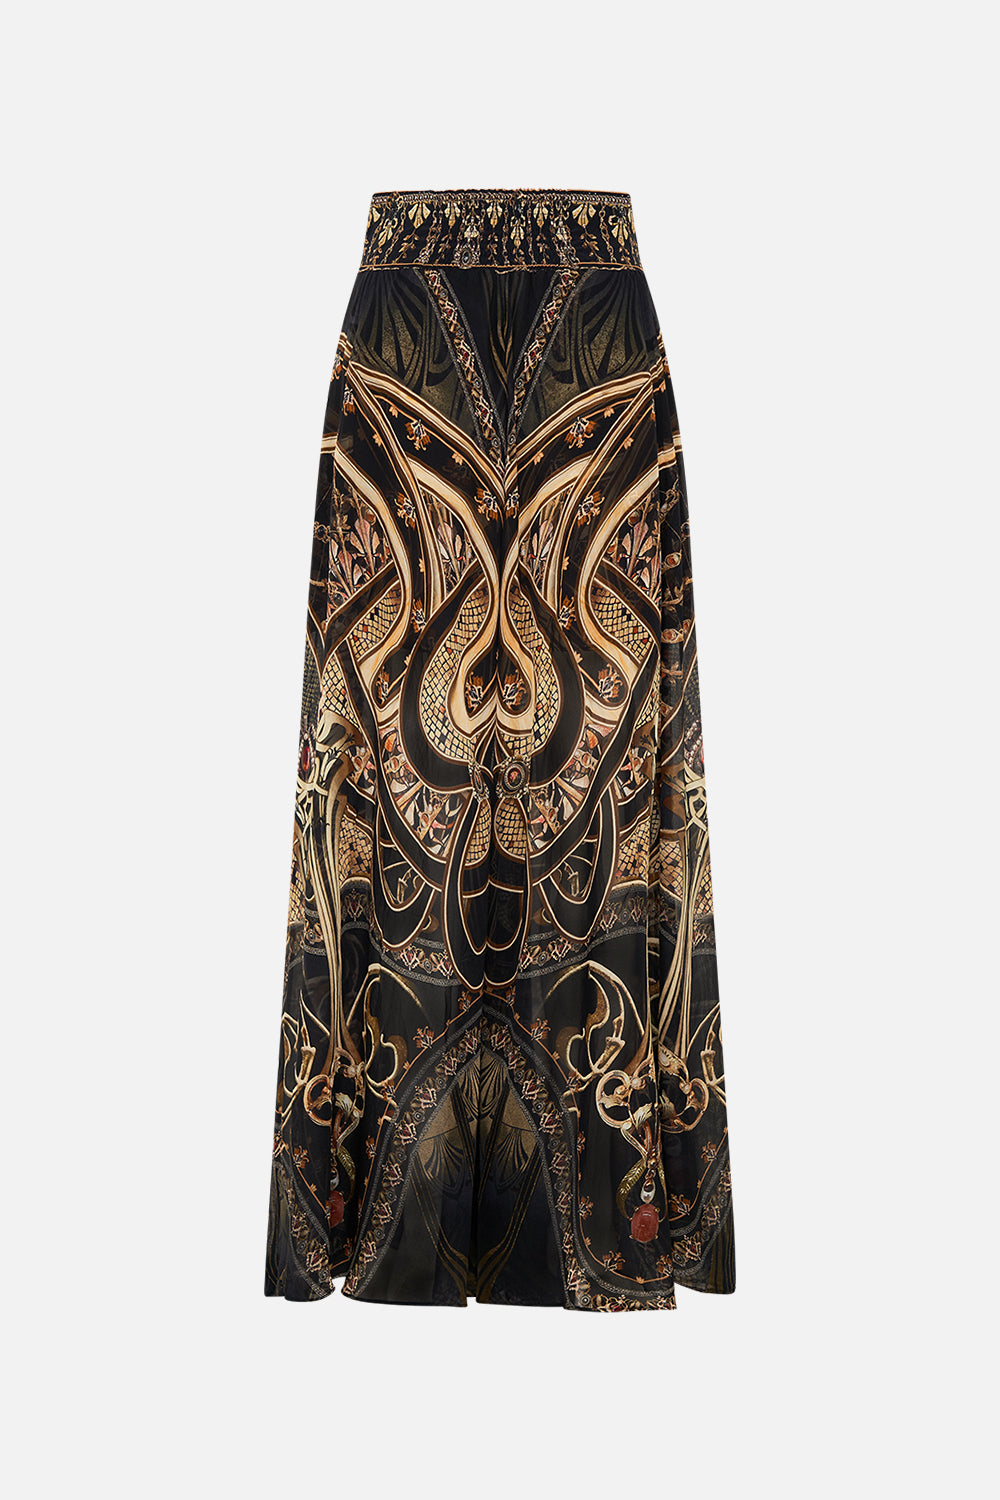 CAMILLA silk pants in Nouveau Noir print